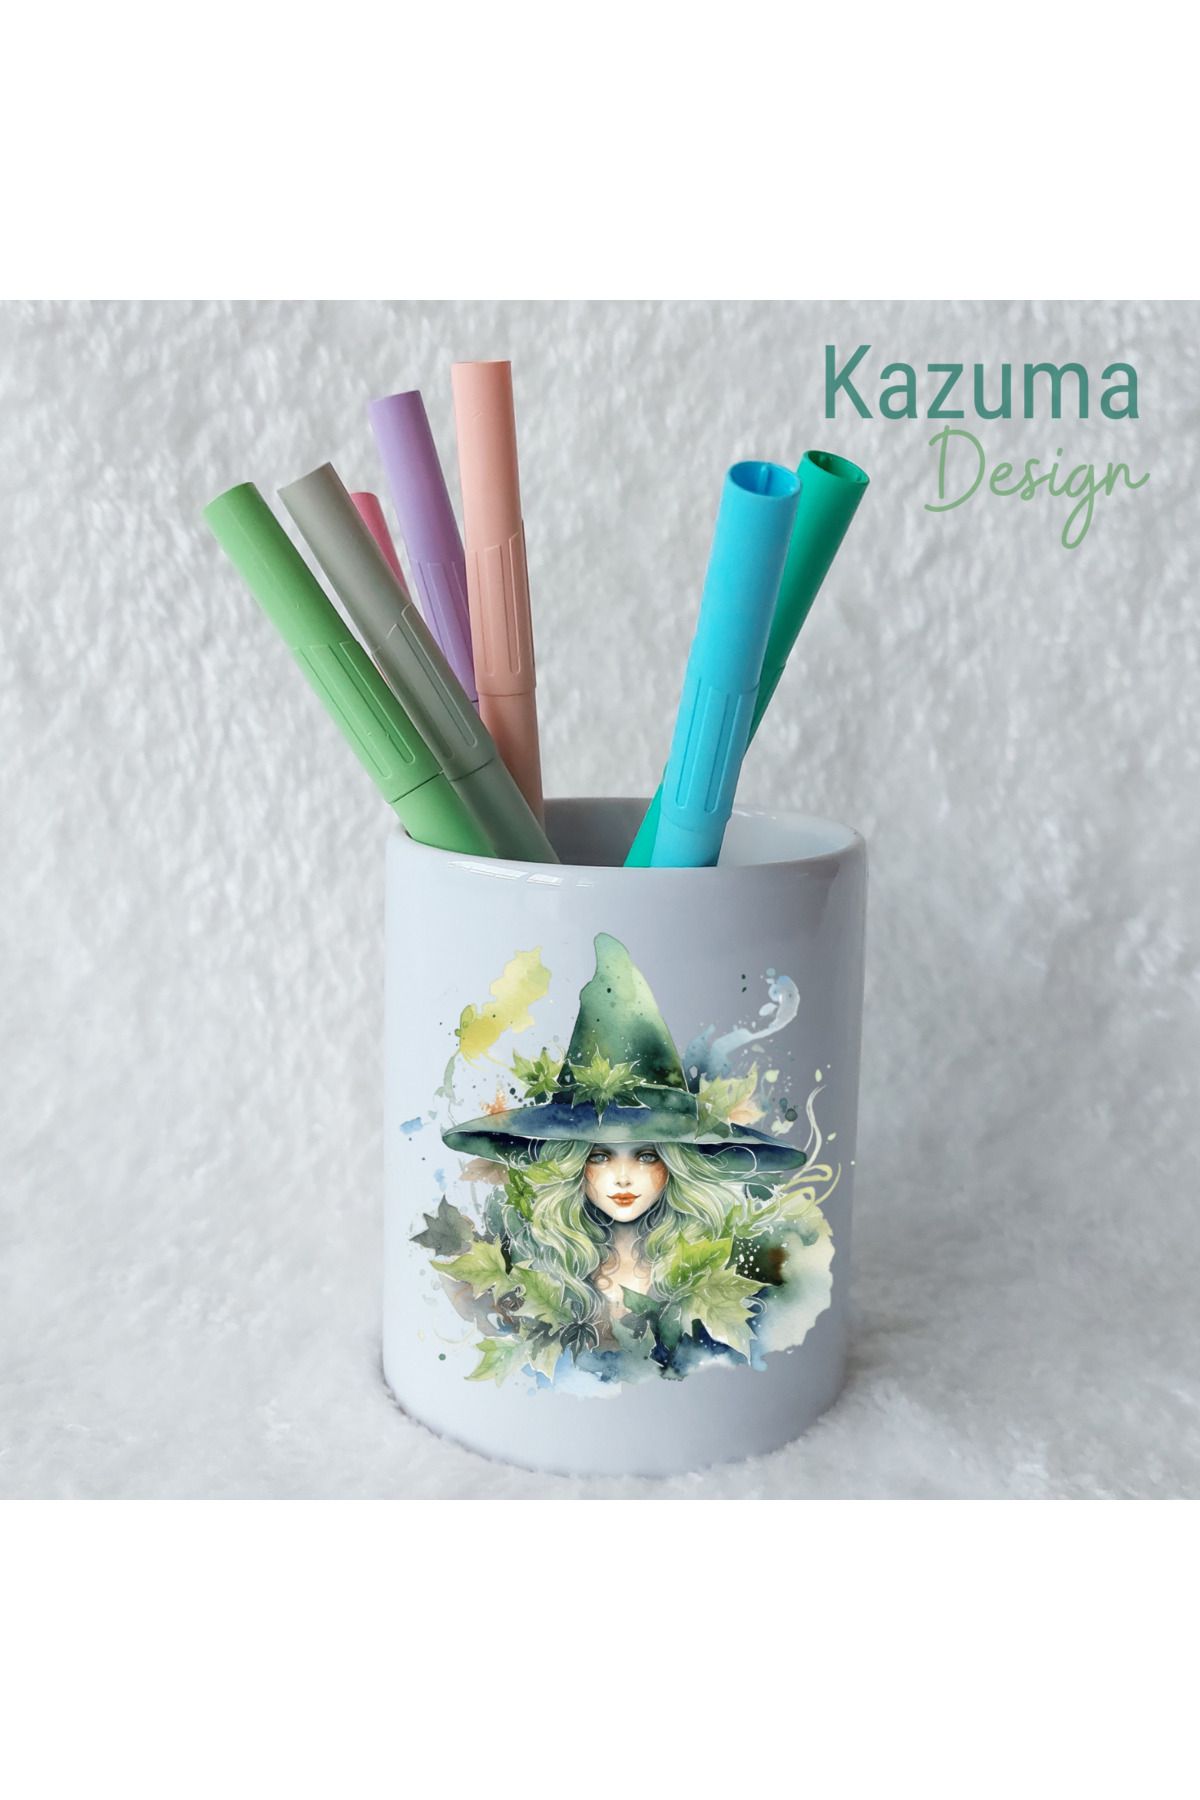 Kazuma Design Sihirbaz Kadın Basklı Seramik Kalemlik Masa Üstü Kalem Kutusu